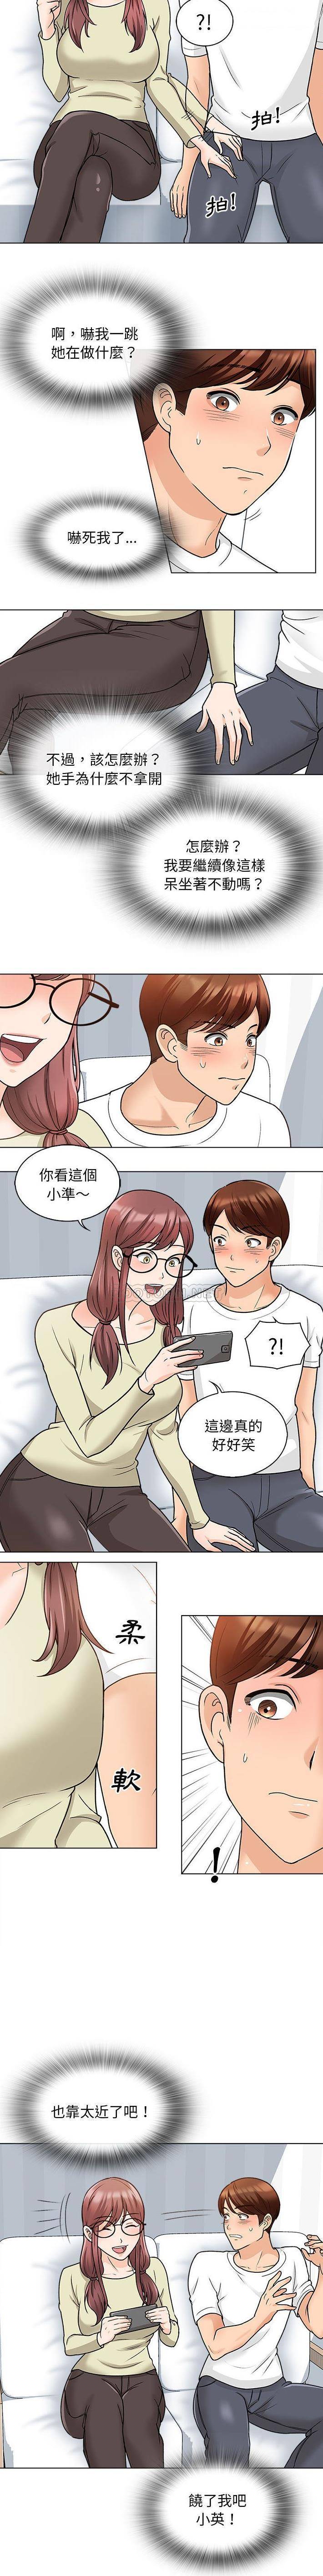 韩国污漫画 幸福公寓 第11话 9